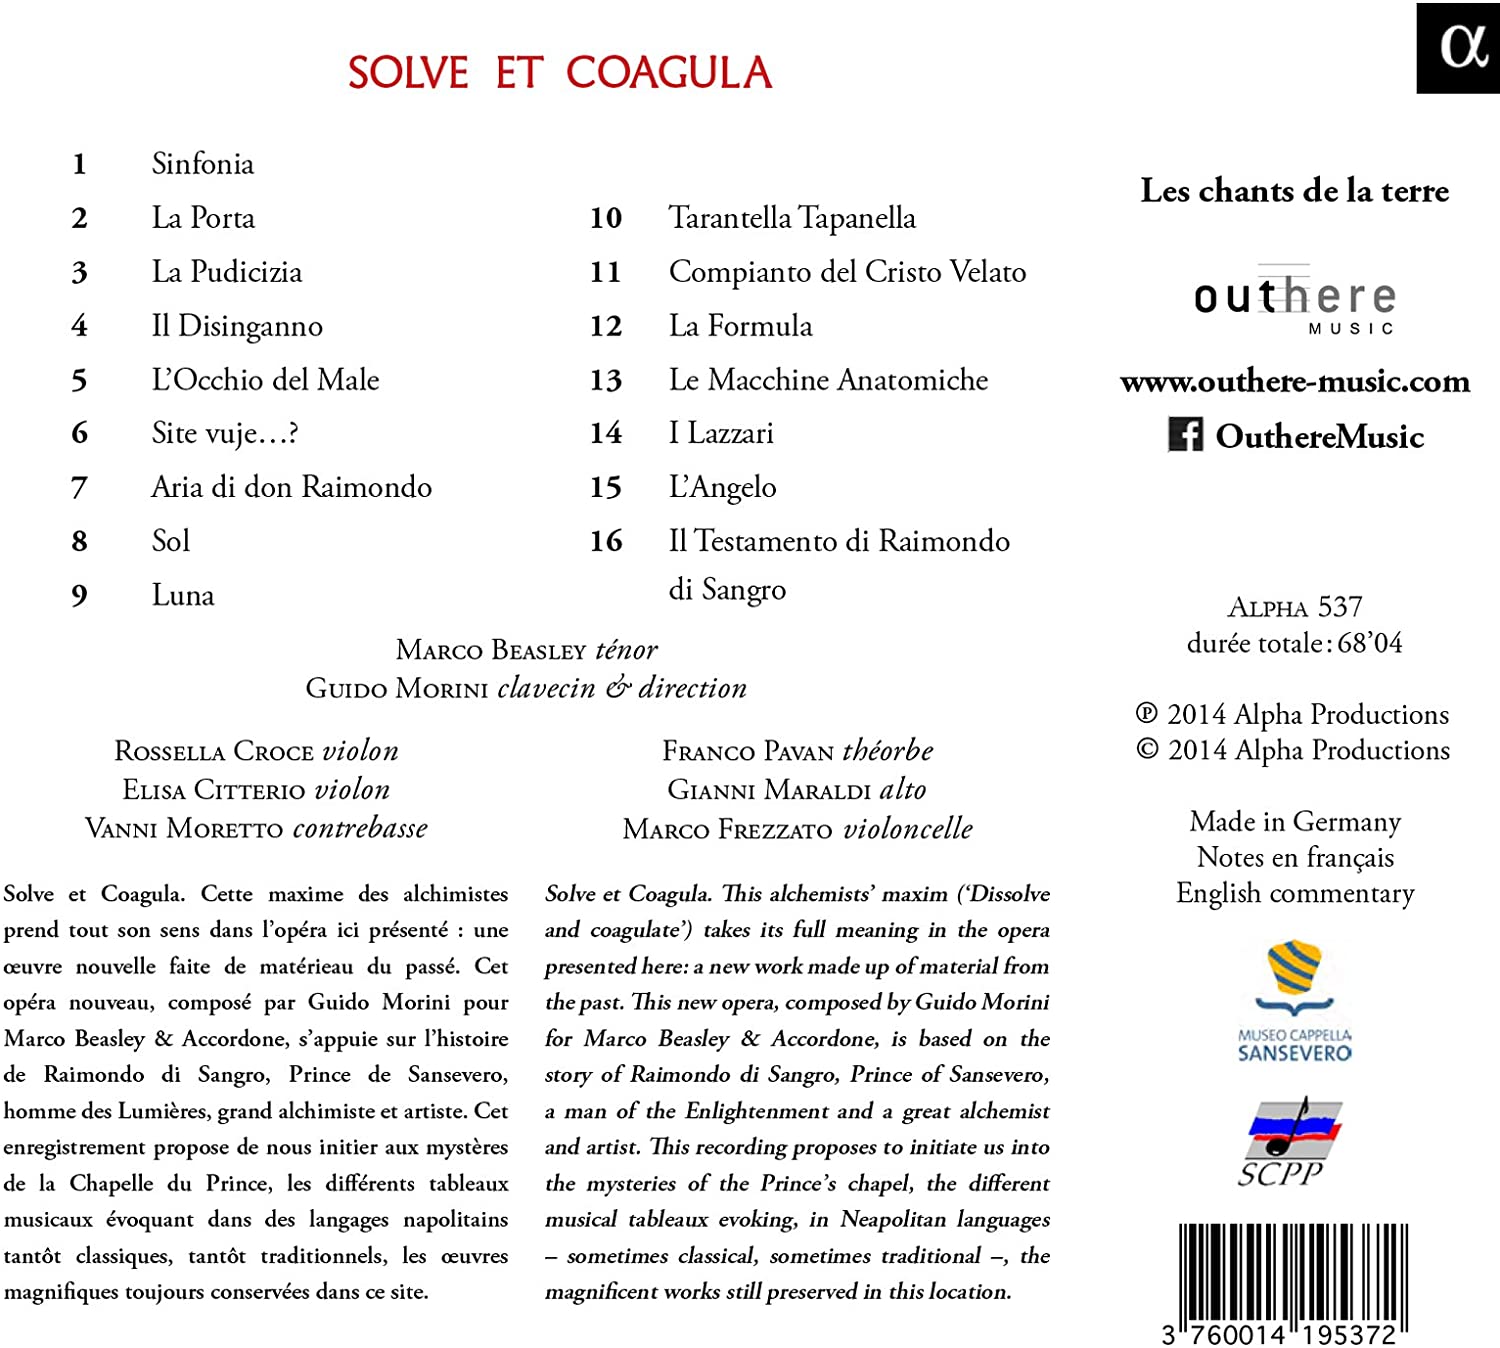 Solve et Coagula, opera w stylu baroku neapolitańskiego - slide-1